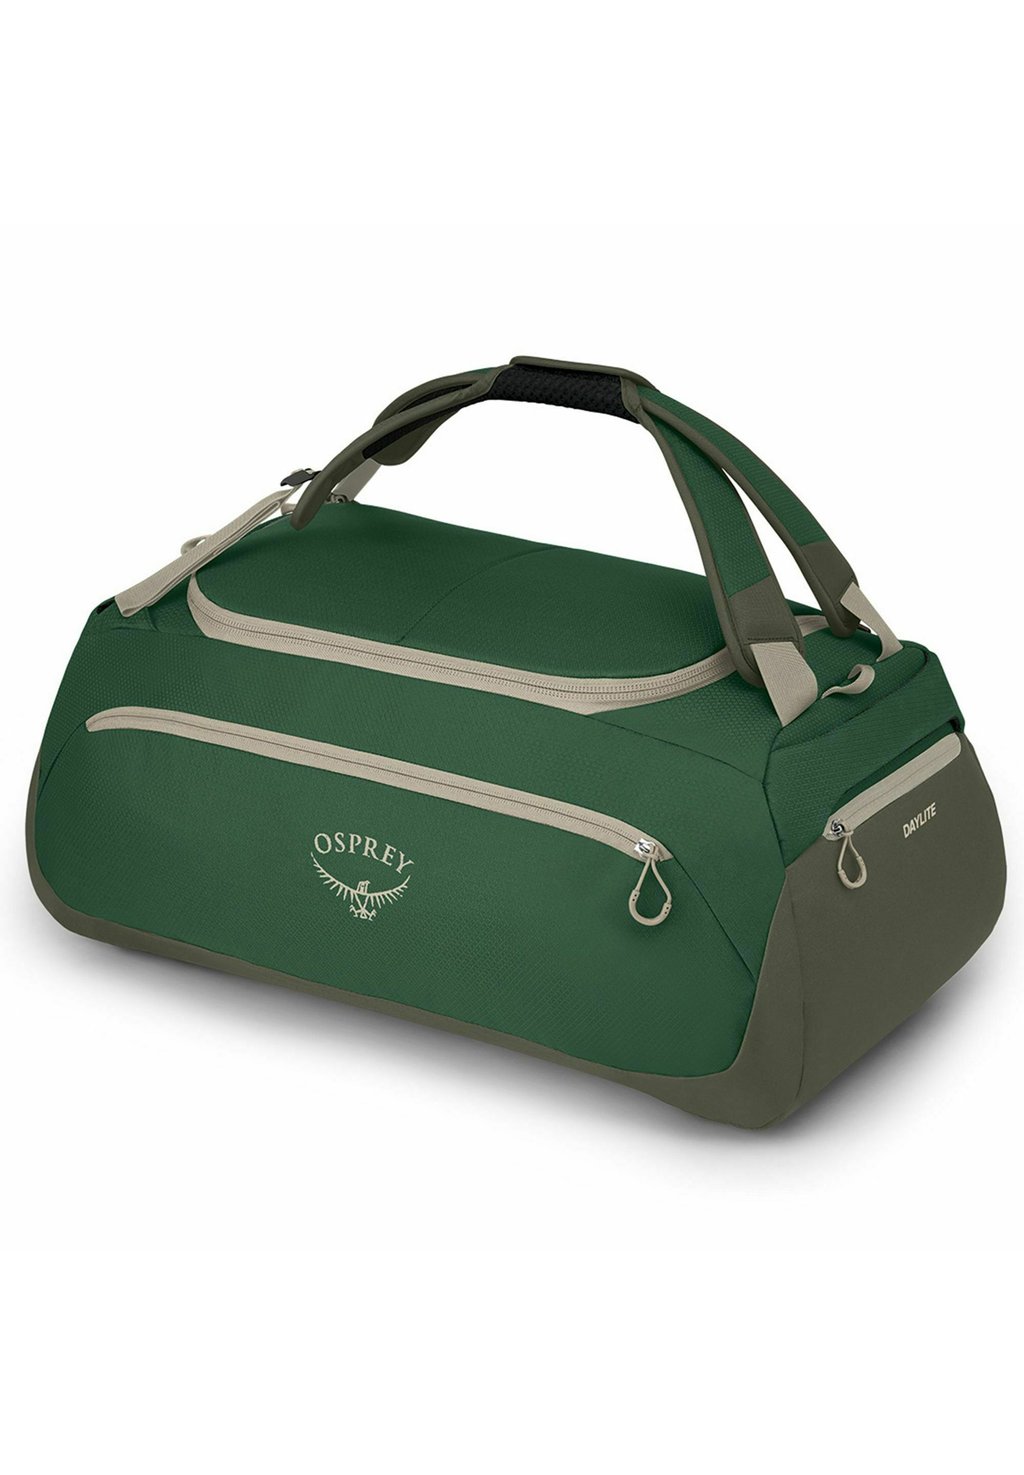 Дорожная сумка DAYLITE 60 REISE 59 CM Osprey, цвет green canopy green creek